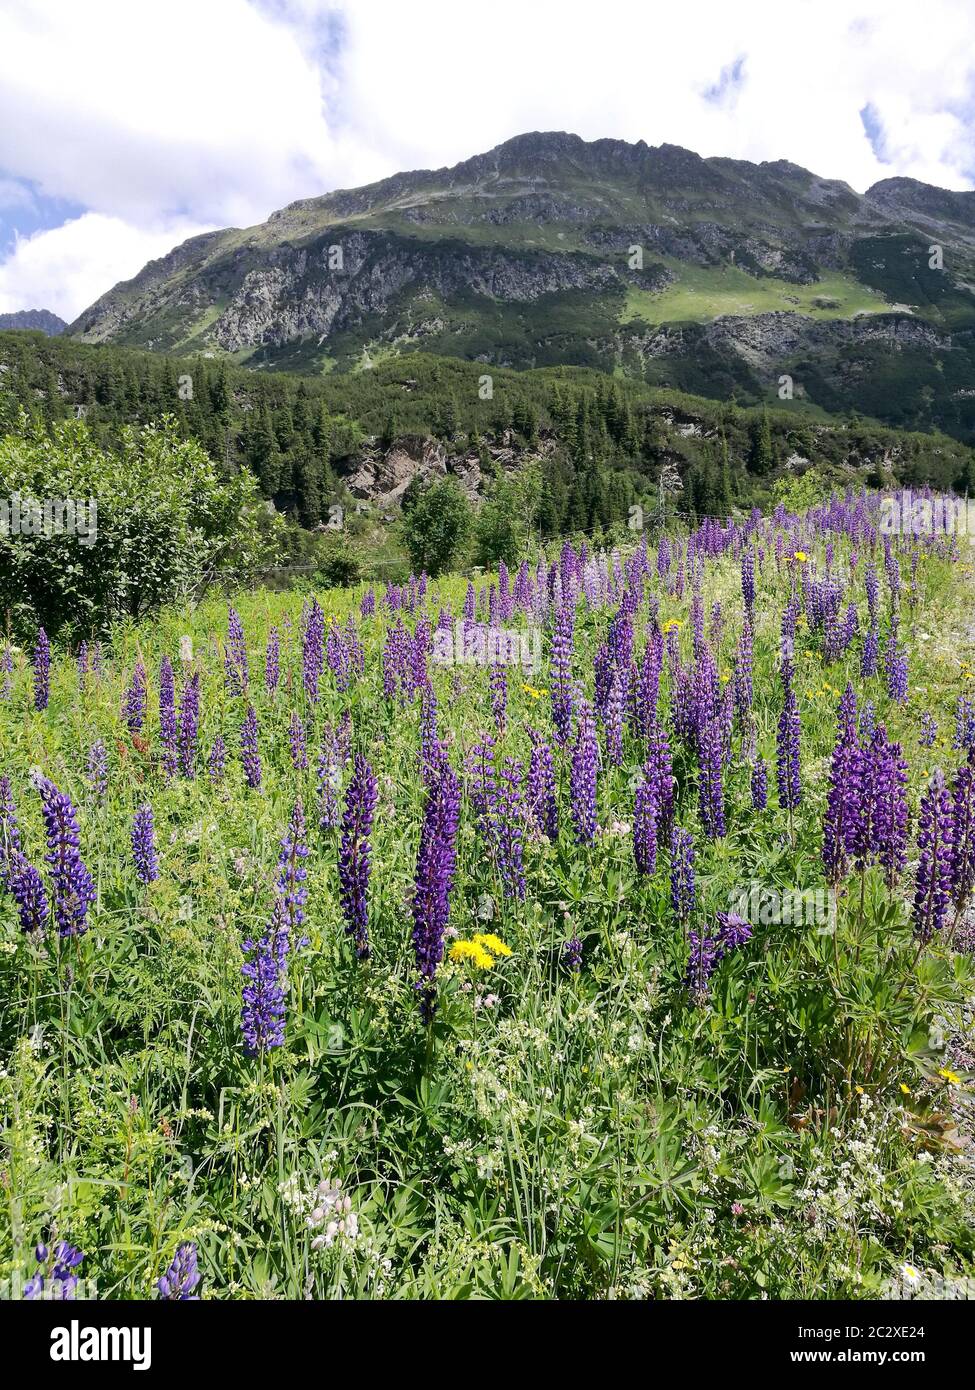 In den Bergen Tirols blühen blaue Lupinen. Im Vordergrund die Blumen und im Hintergrund ein Berg.  Blue lupines bloom in the mountains of Tyrol. In th Stock Photo